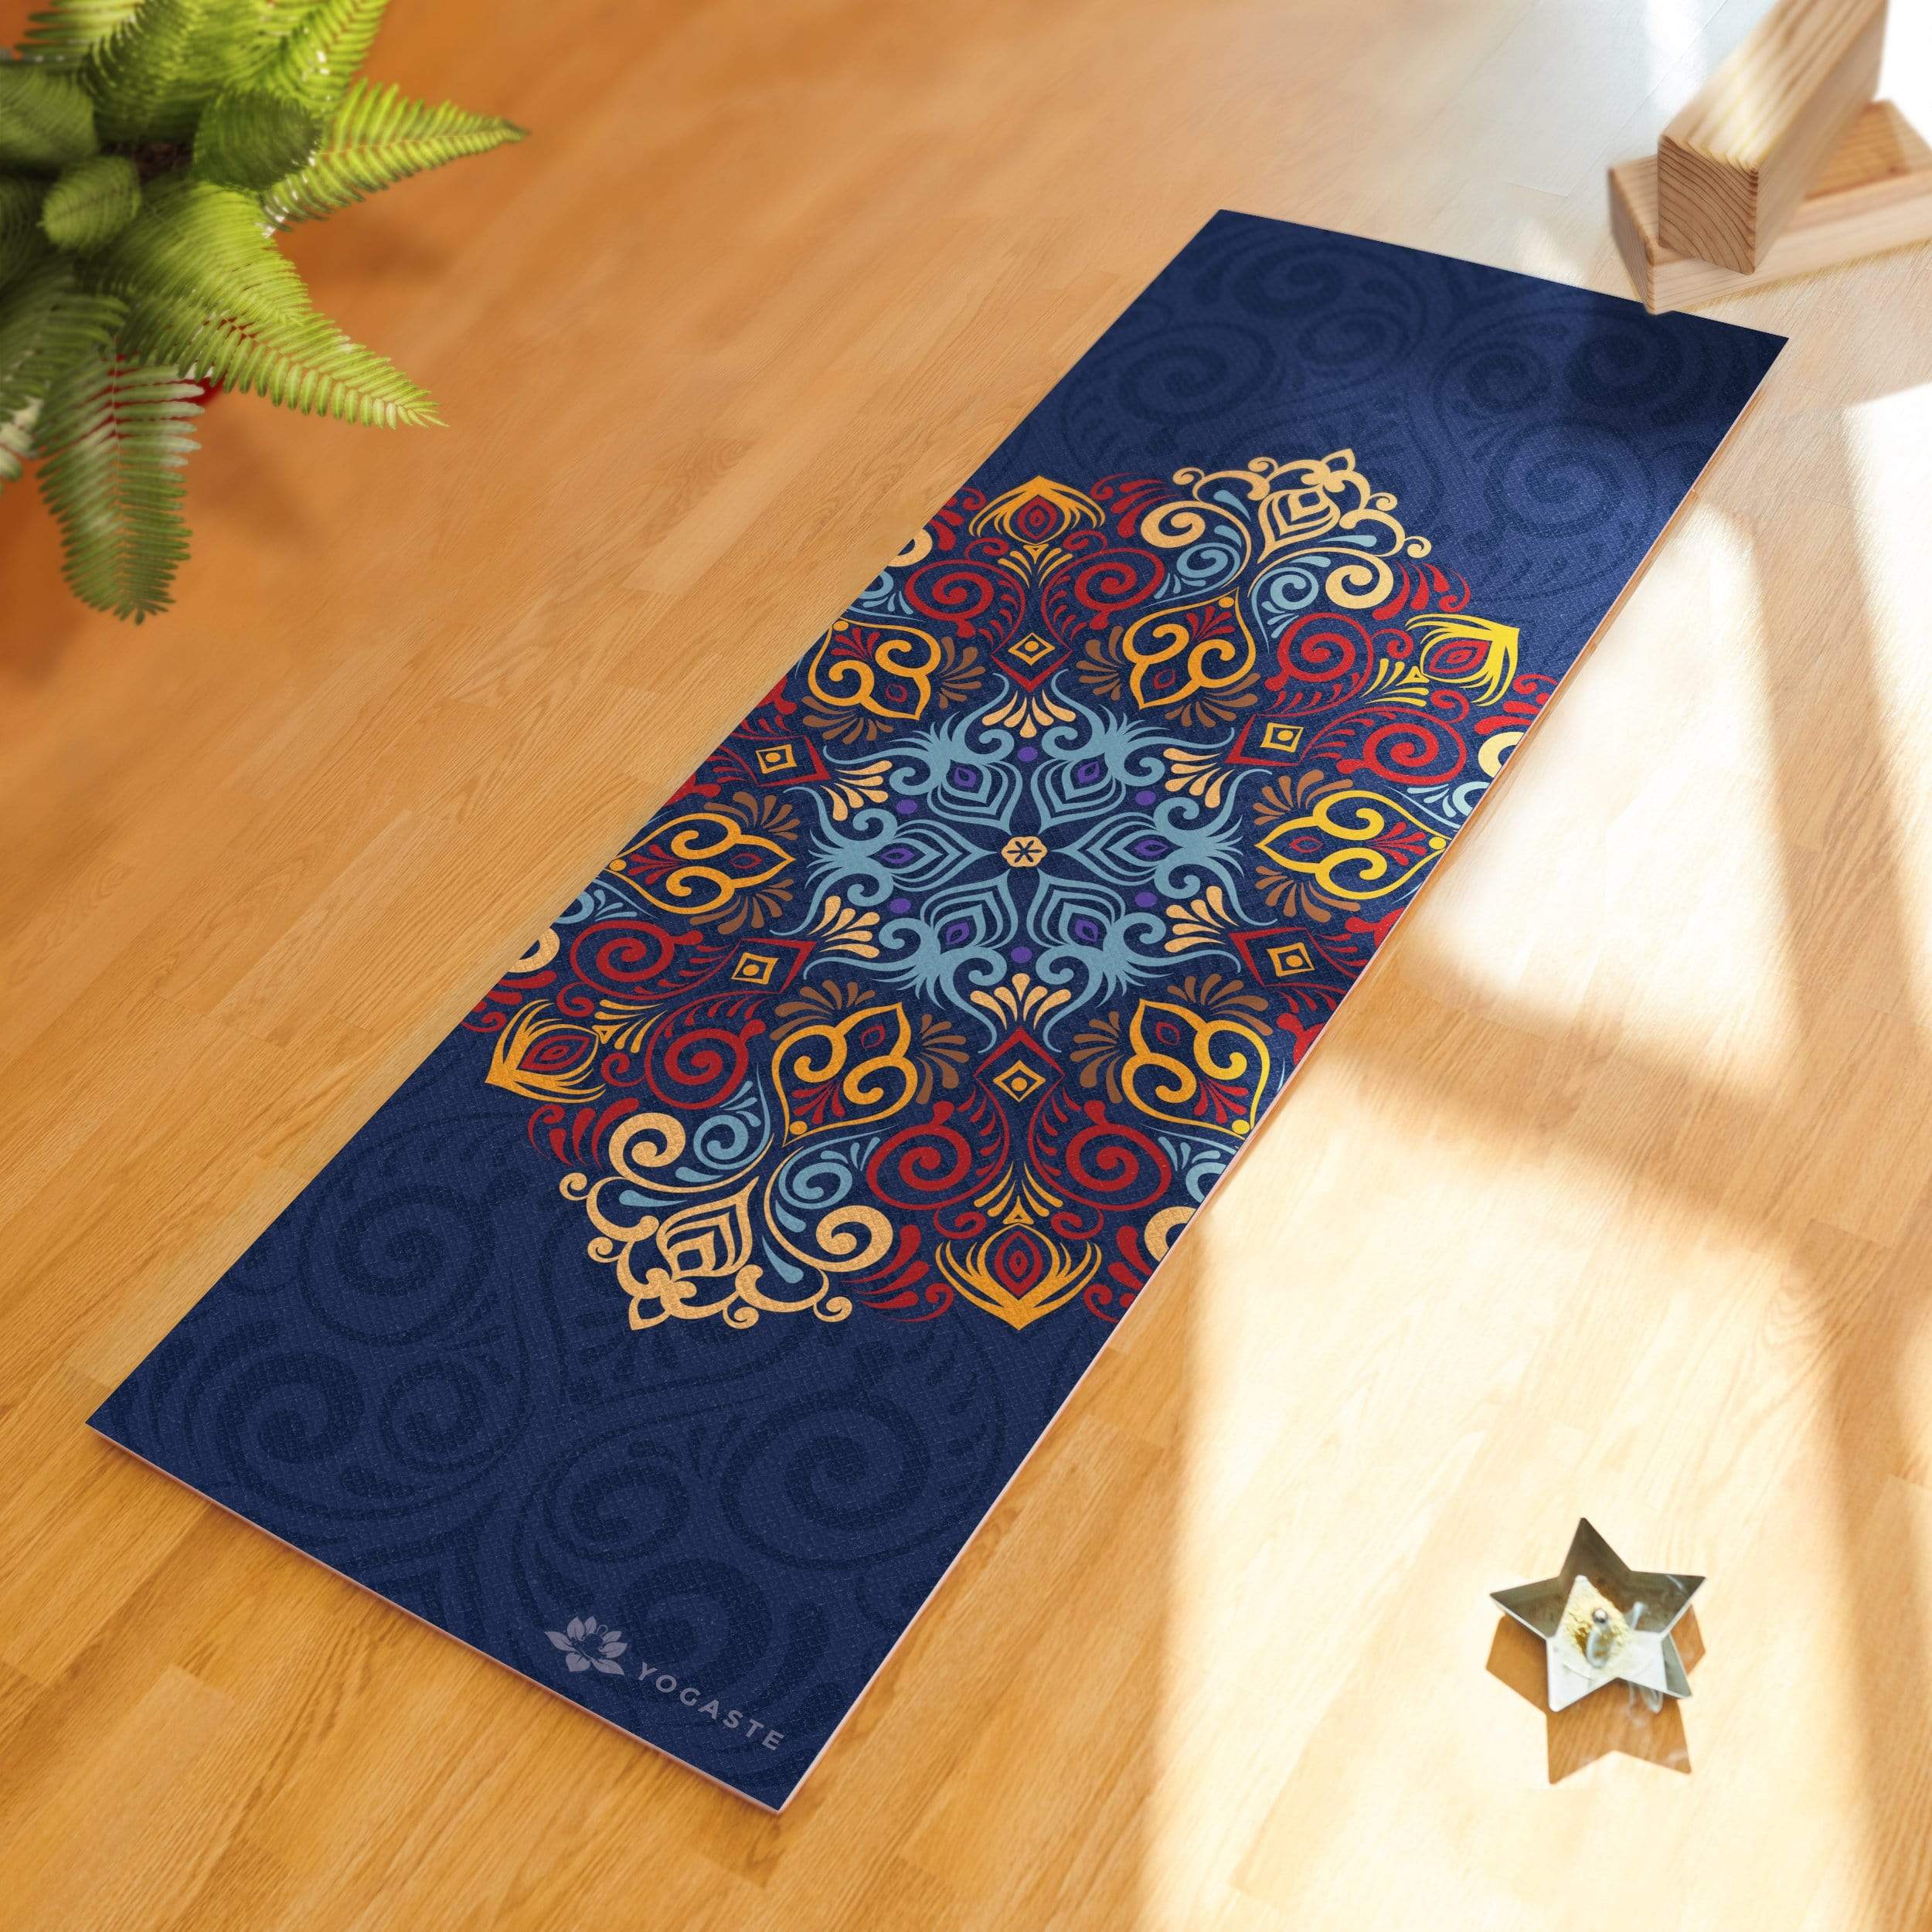 Gaiam Premium Yoga Mat, Aubergine Swirl, 6mm